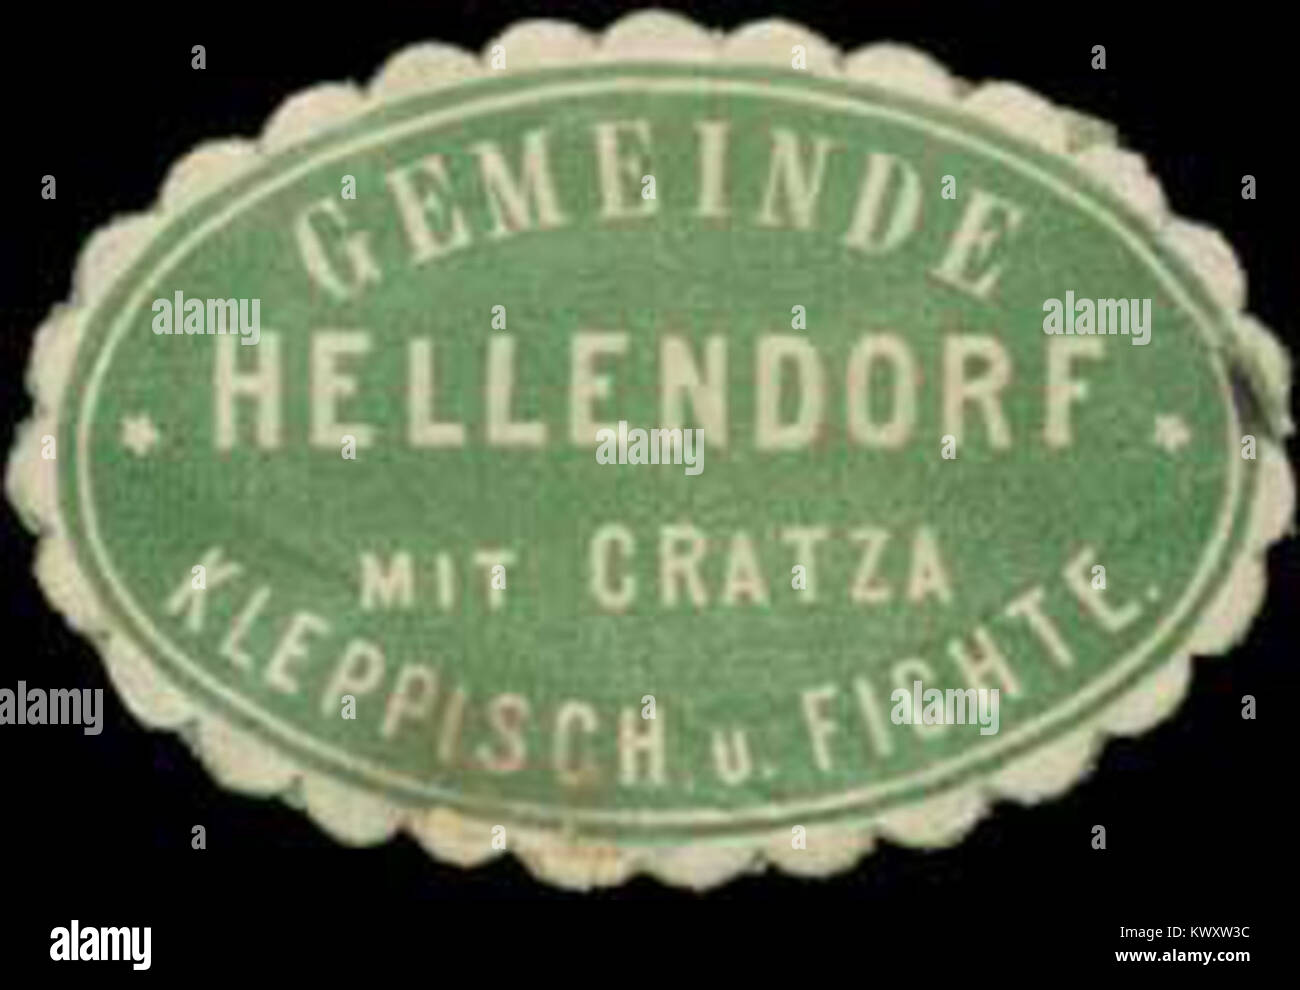 Siegelmarke Gemeinde Hellendorf mit Cratza, Kleppisch und Fichte W0334533 Stock Photo